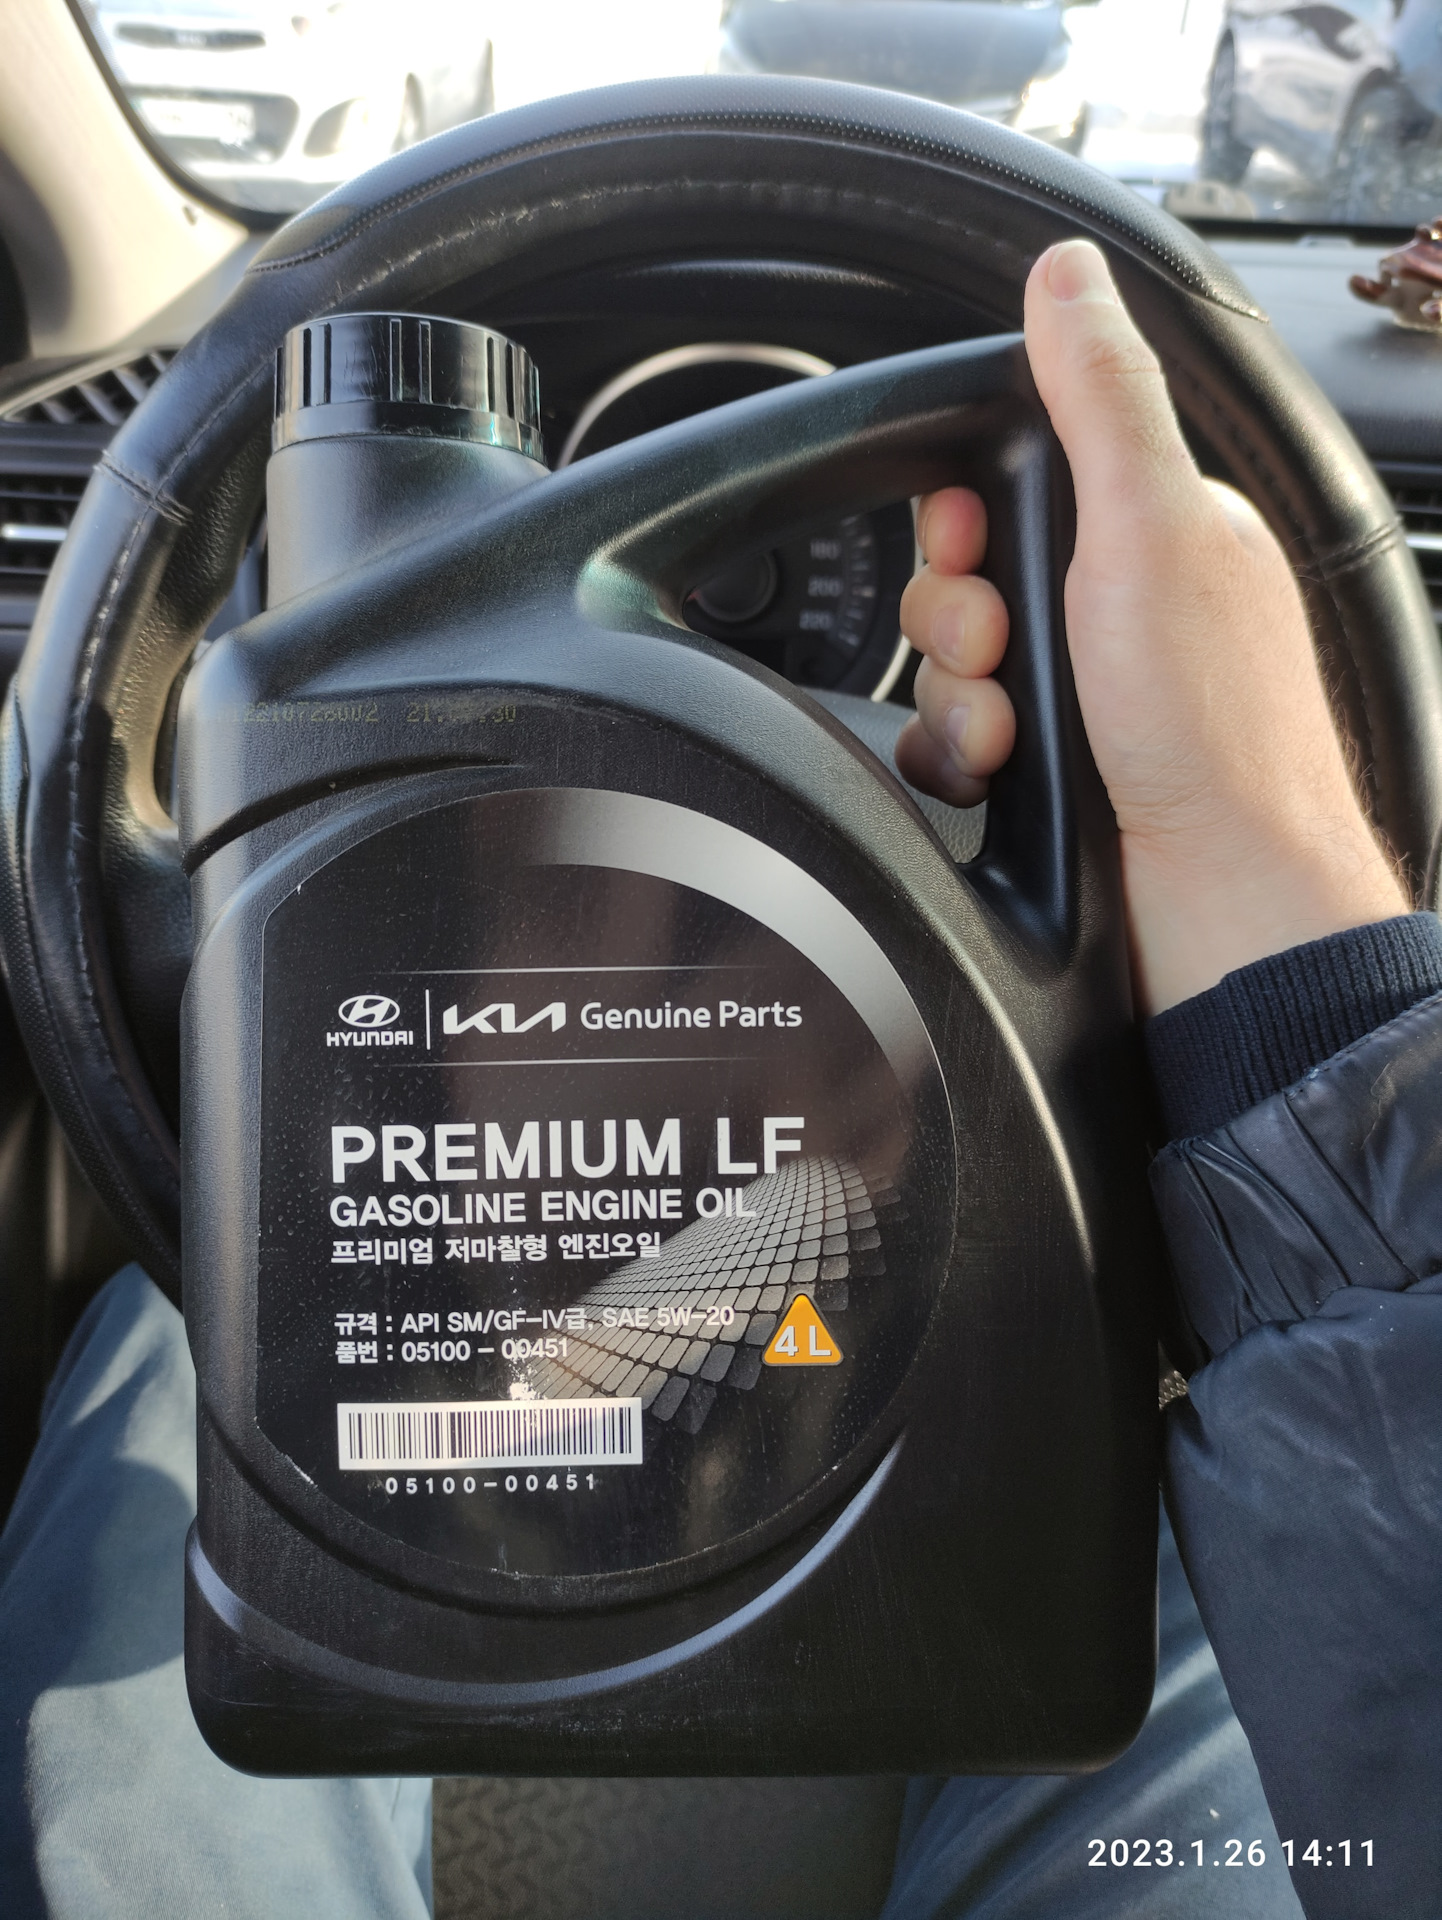 Hyundai premium lf gasoline 5w 20. Hyundai/Kia Premium LF gasoline. Прожарка Premium LF 5-20. Mobis Premium LF gasoline 5w-20 обзоры.